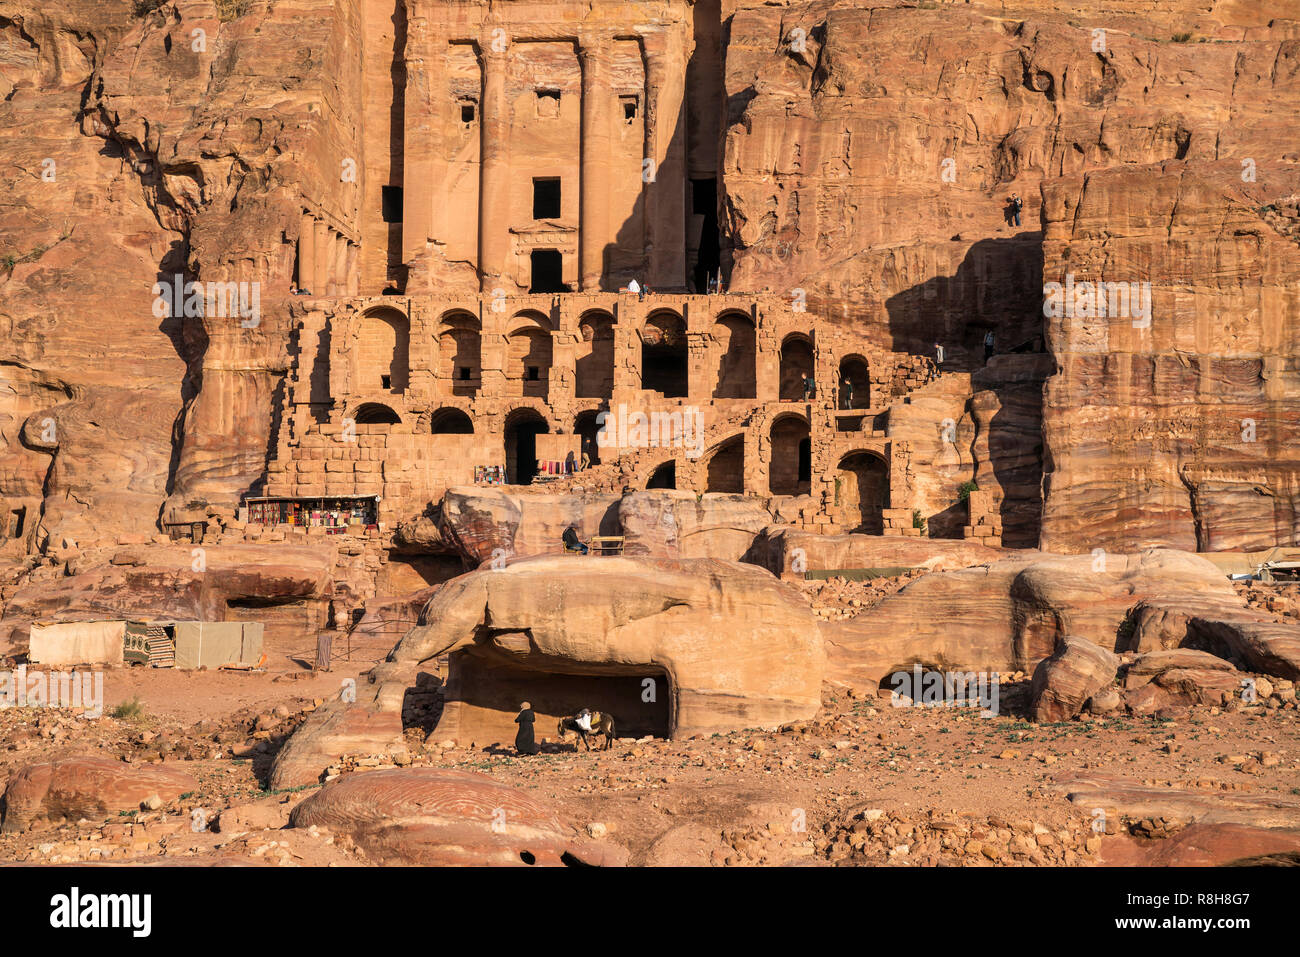 Das Urnengrab, Gräber der Königswand, Petra, Jordanien, Asien | Urn Tomb,  The Royal Tombs,  Petra, Jordan, Asia Stock Photo